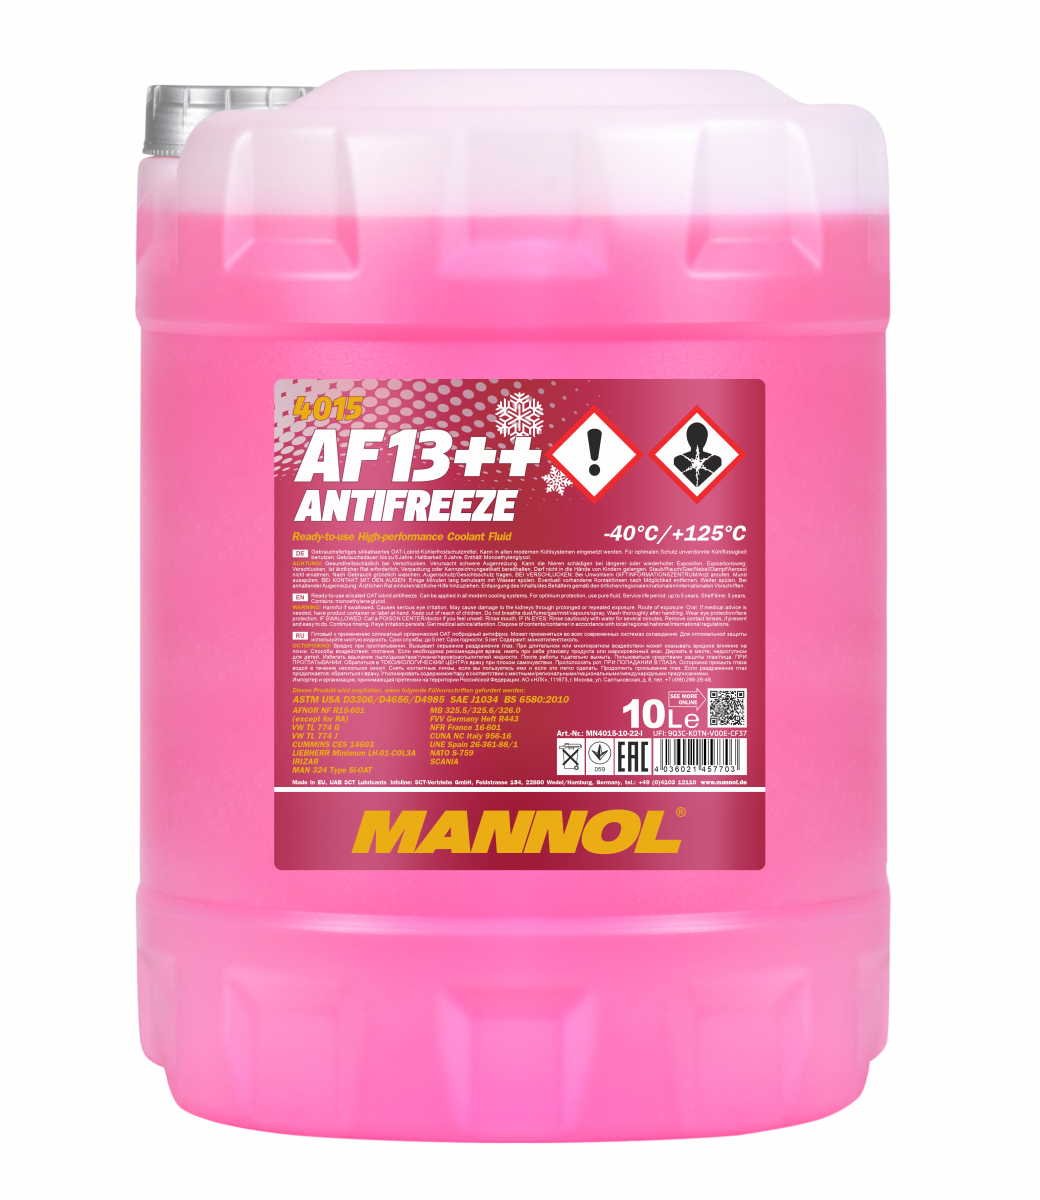 Mannol 4015 Kühlerfrostschutz Antifreeze AF13++ High Performance -40 Fertigmischung 10 Liter